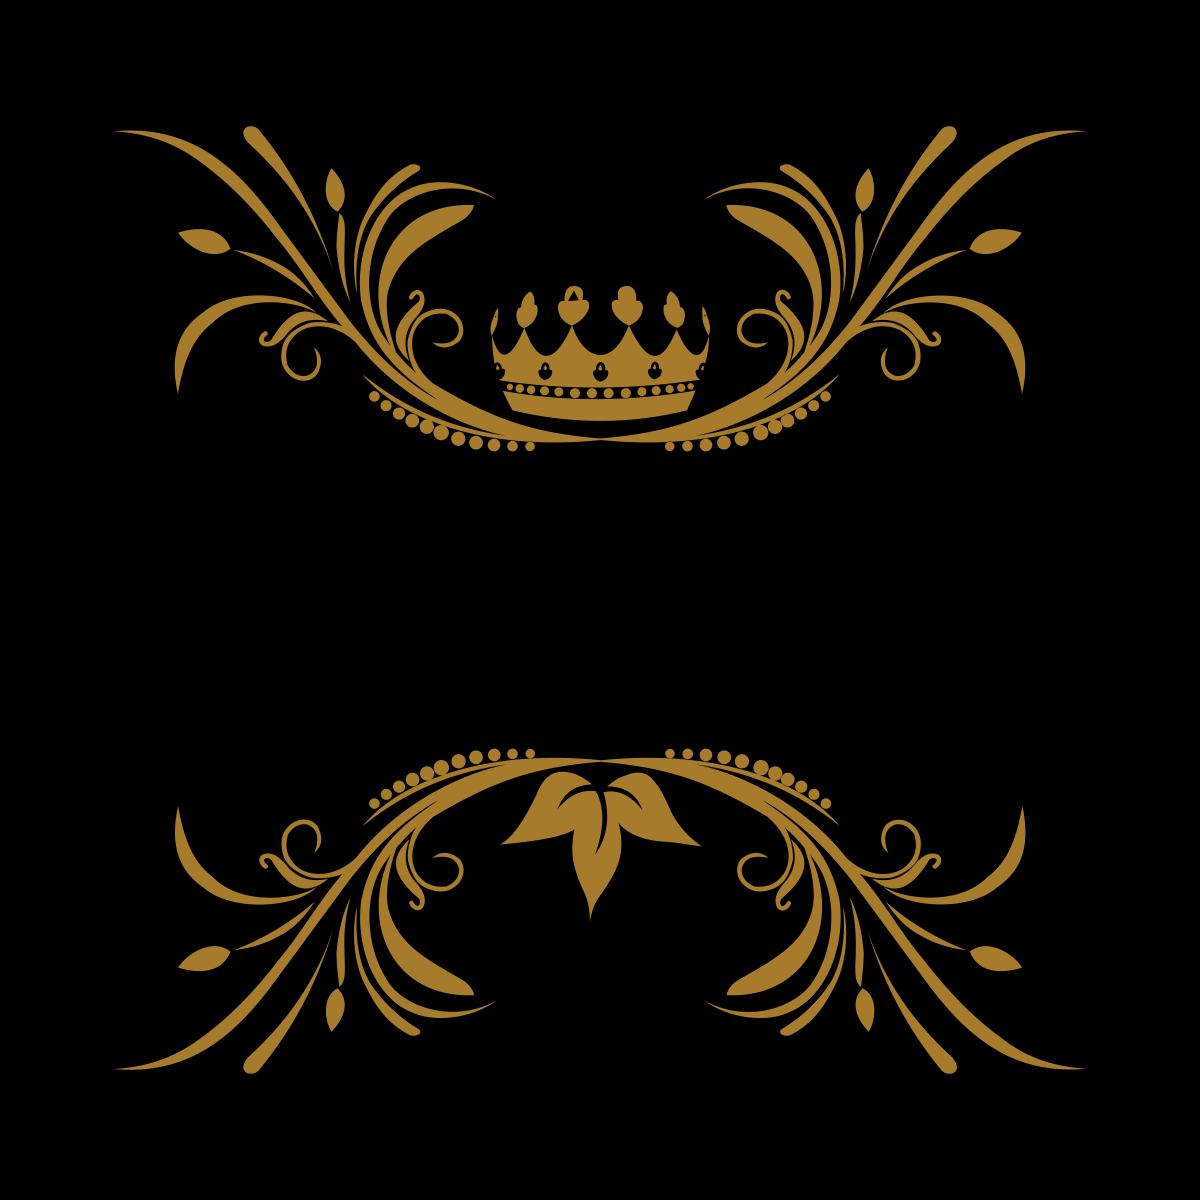 Фон для логотипа png. Золотые узоры. Узор золото на черном. Золотые вензеля на черном фоне. Черный фон с узорами и золотом.